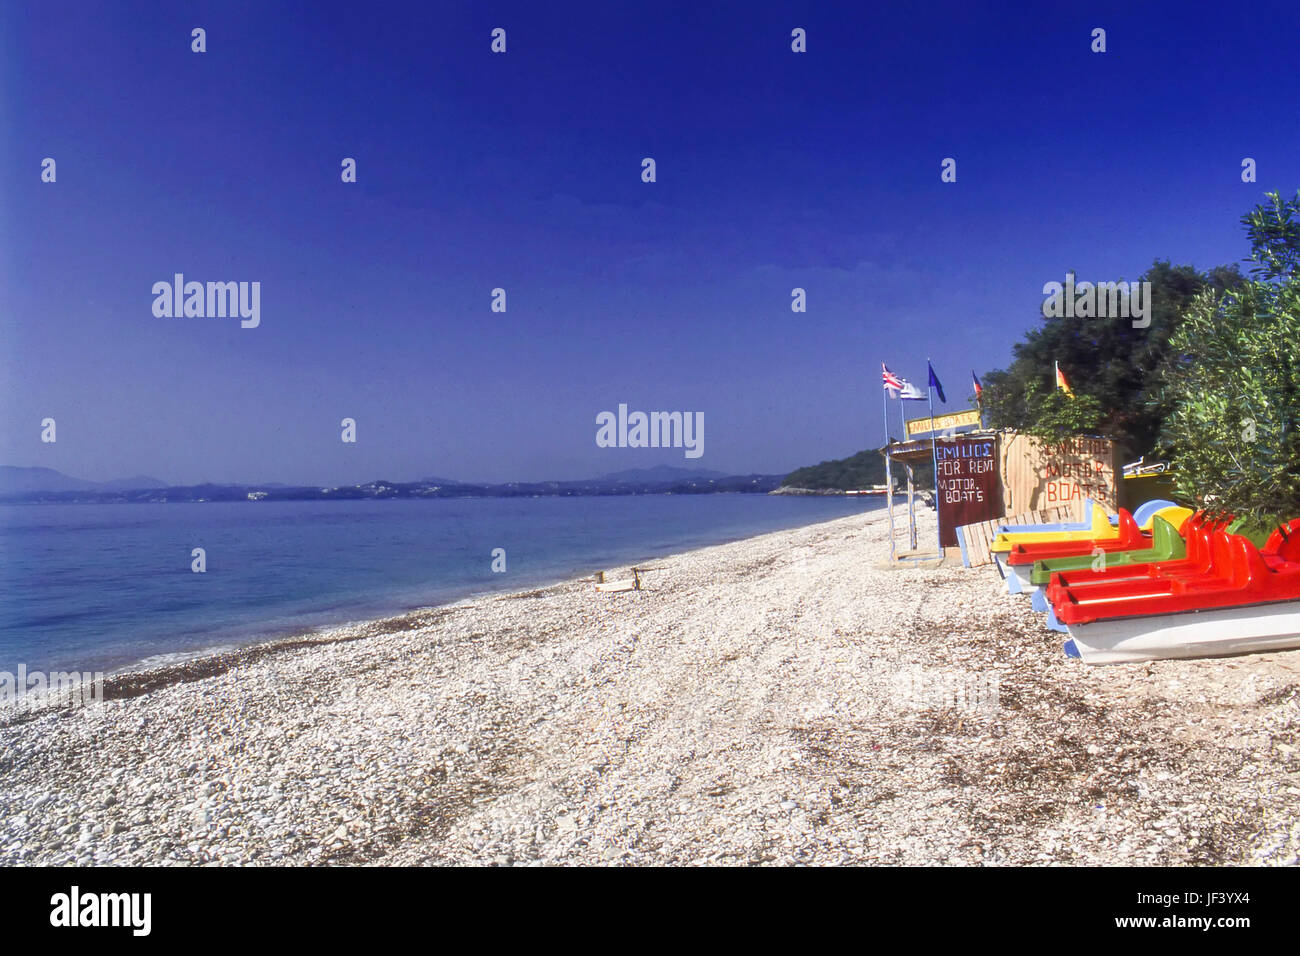 Barbati Beach, Corfu, Greece Stock Photo